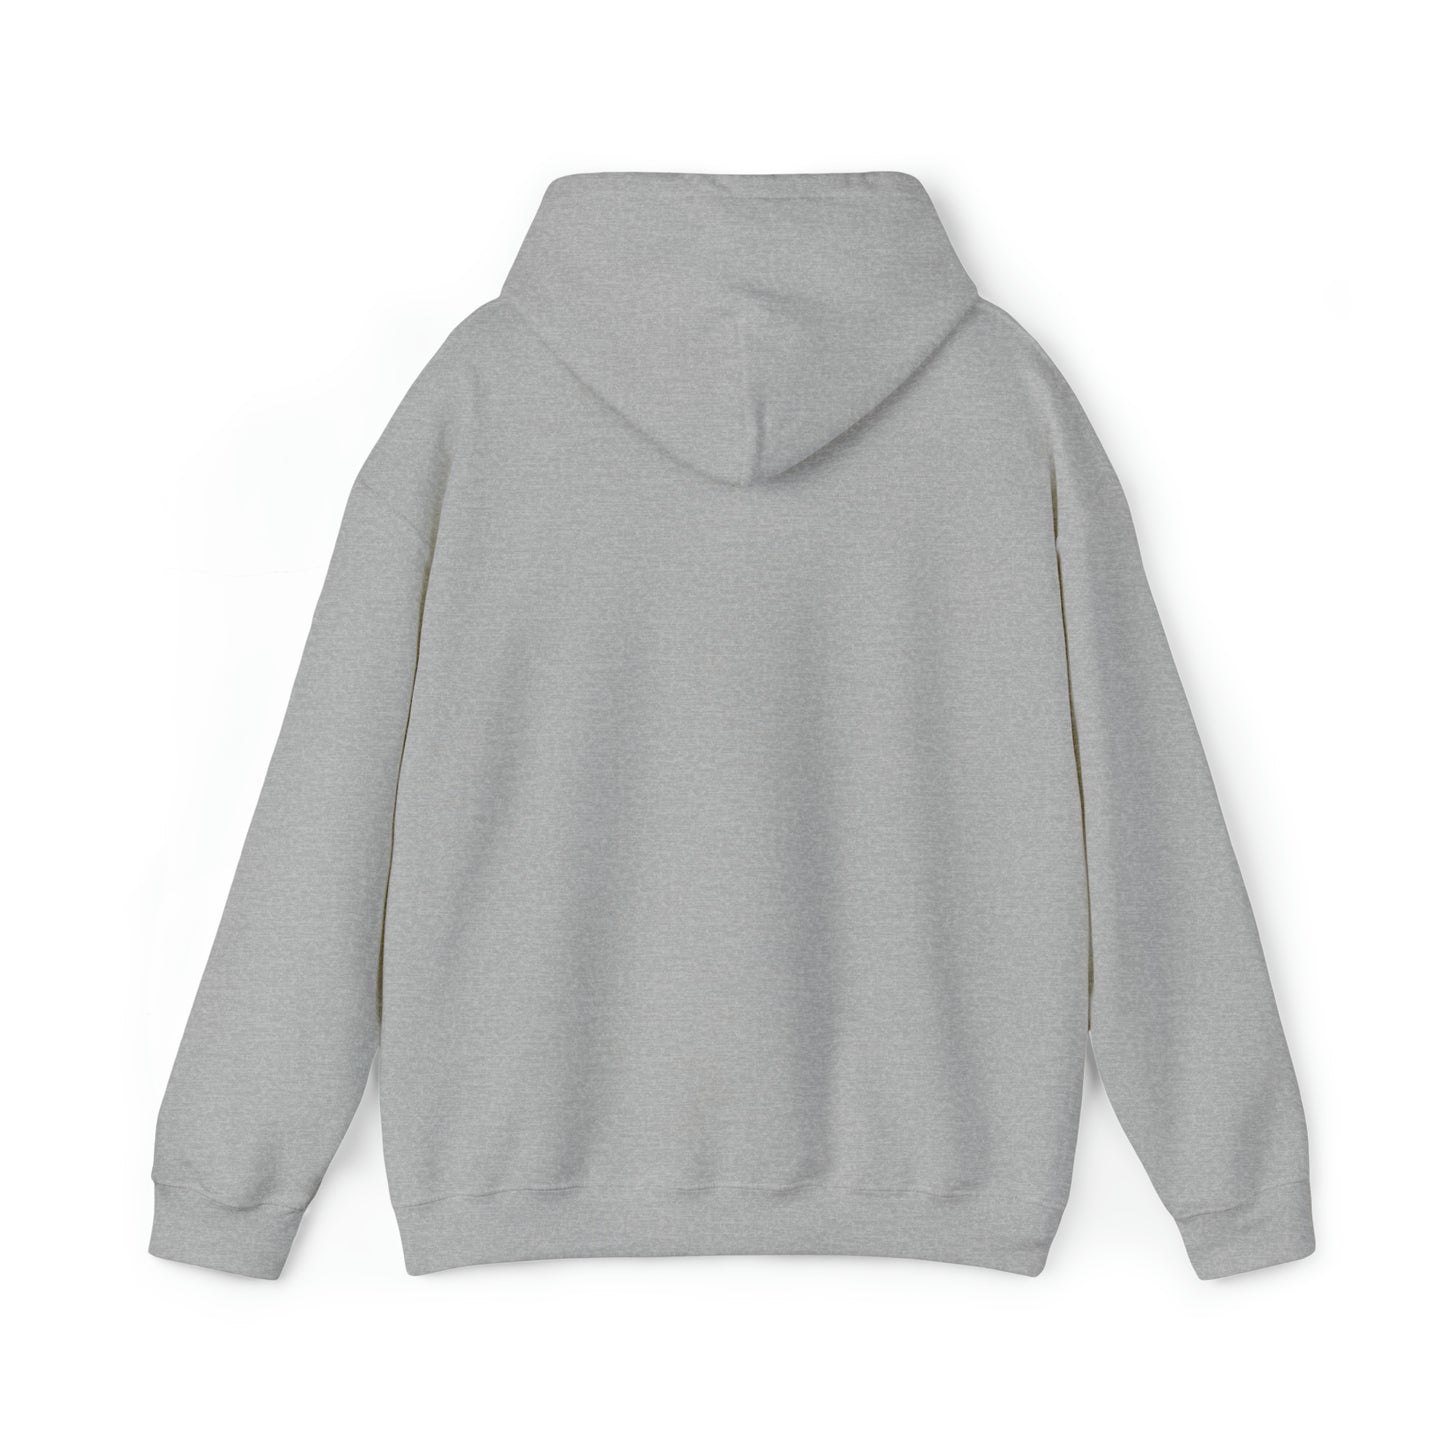 LOVED BY A KOOIKER Unisex Heavy Blend™ Hooded Sweatshirt